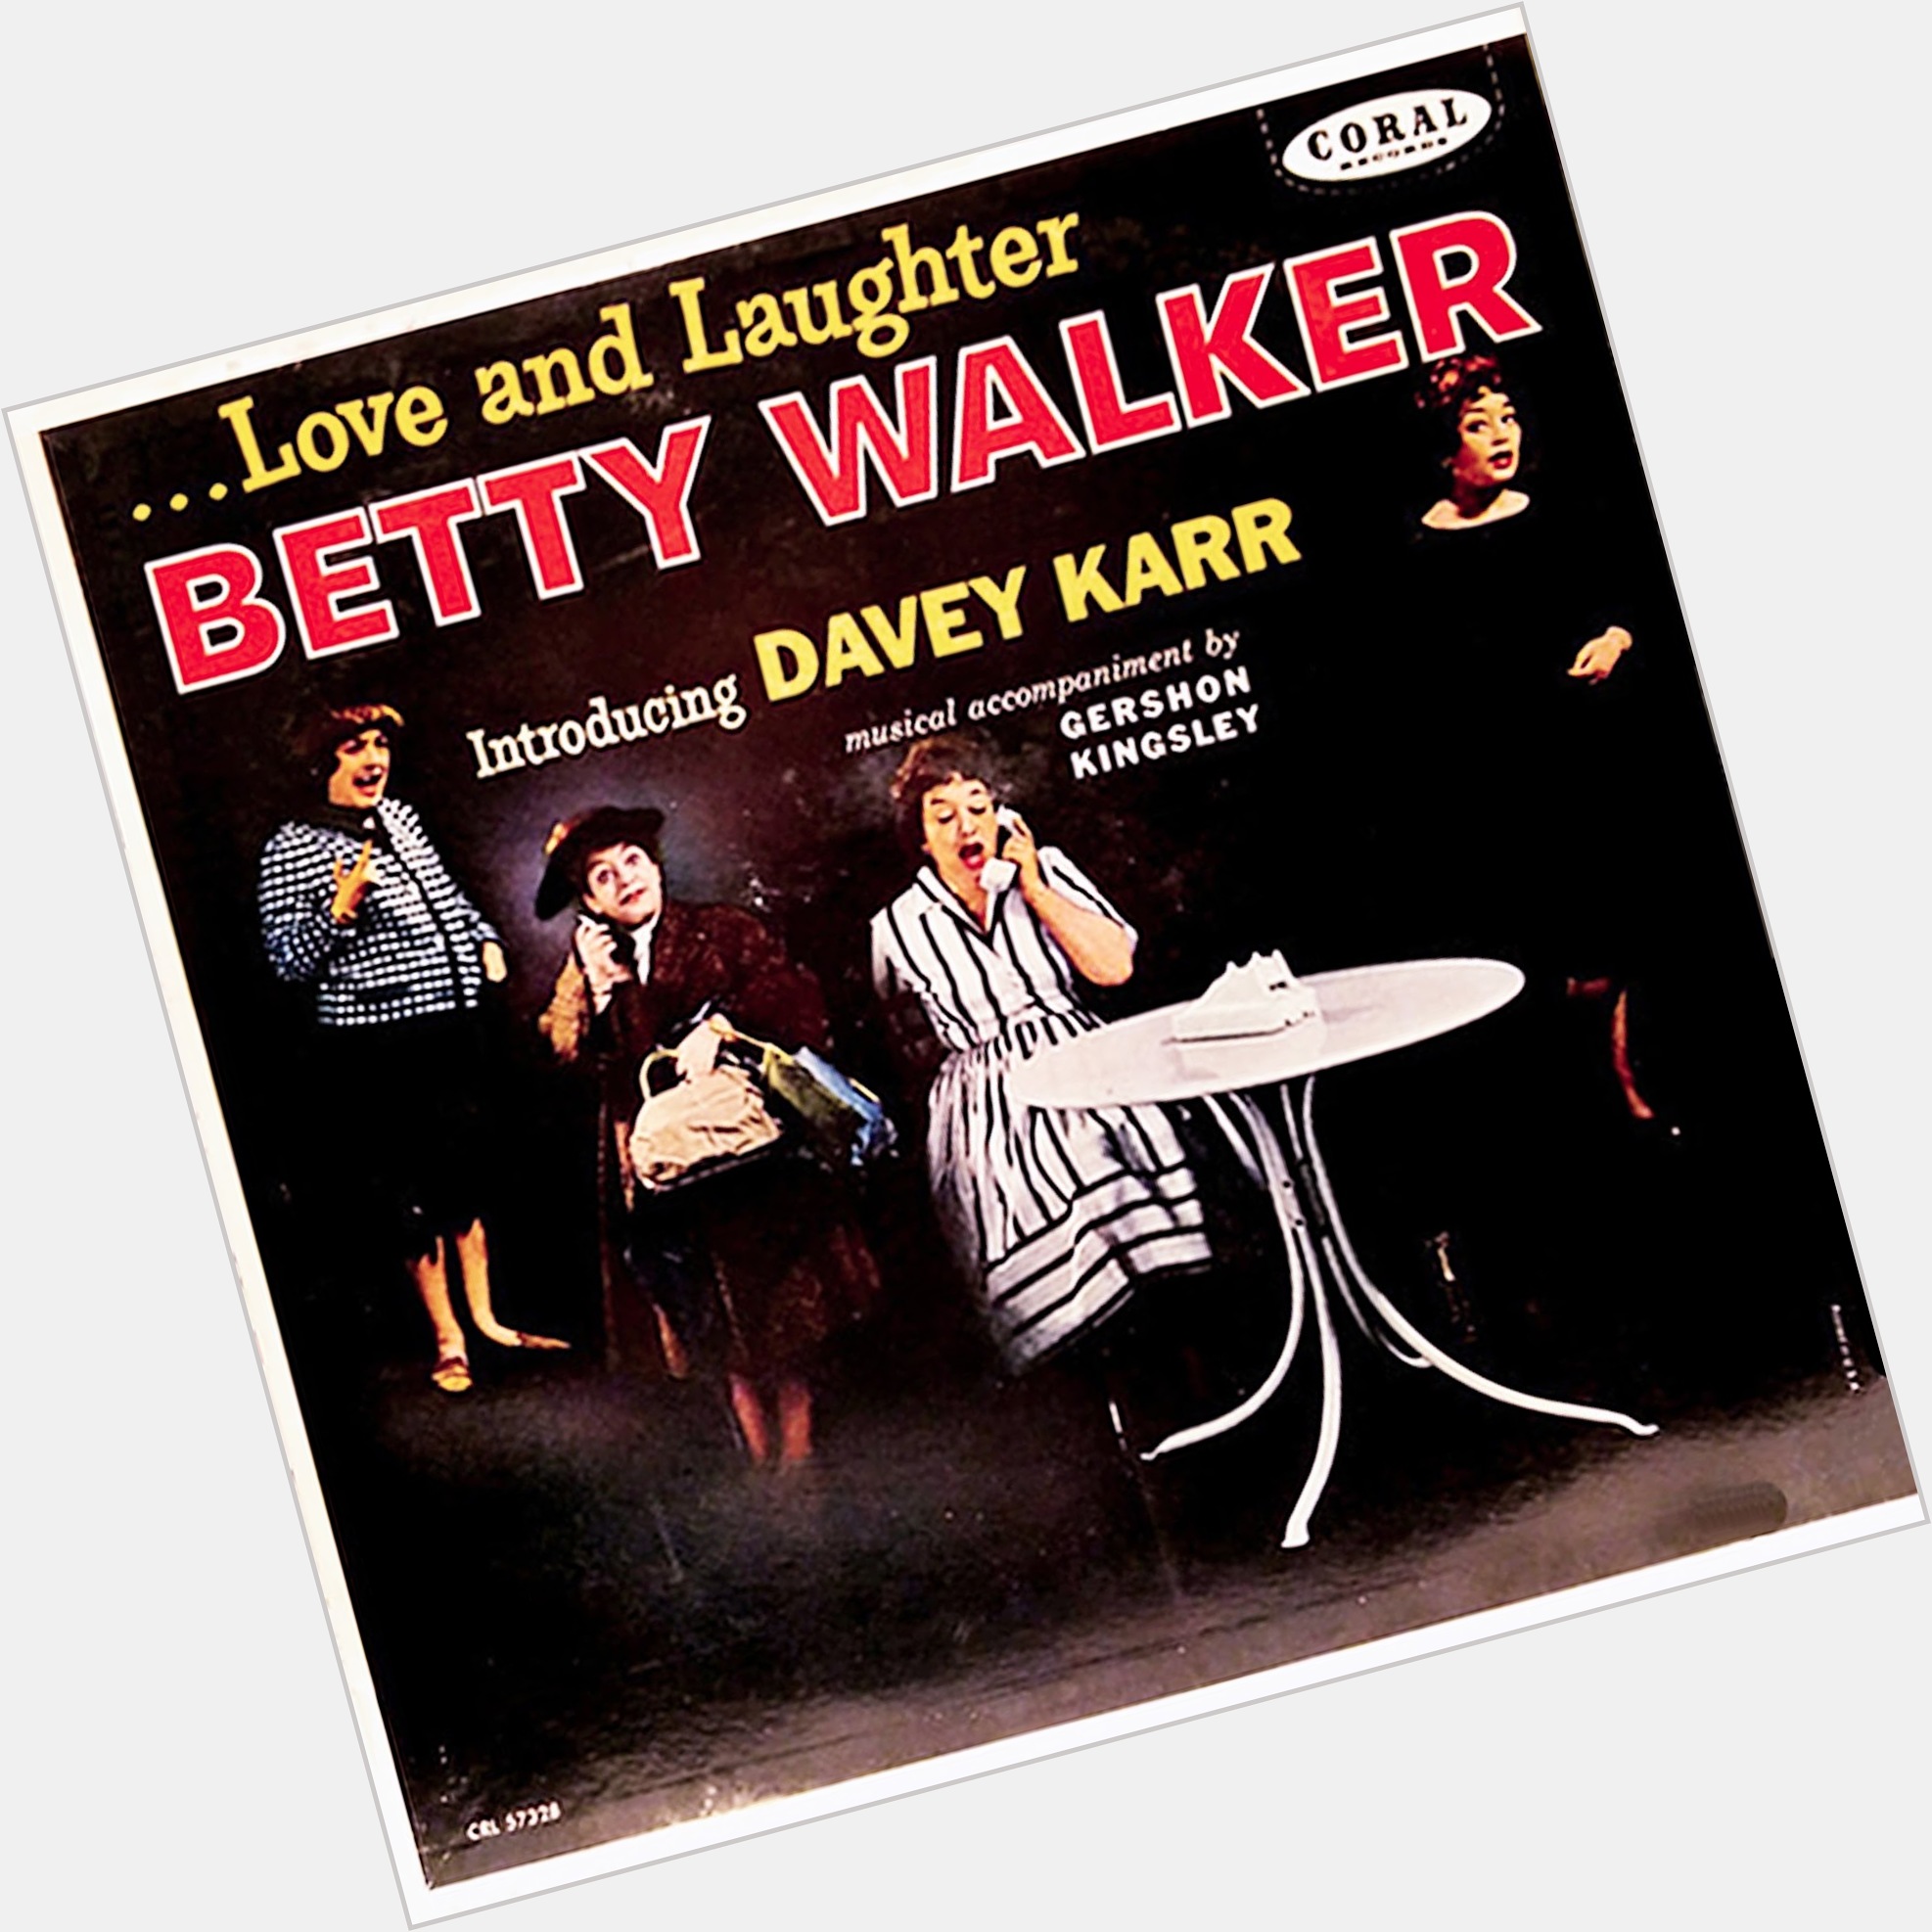 <a href="/hot-women/betty-walker/where-dating-news-photos">Betty Walker</a>  